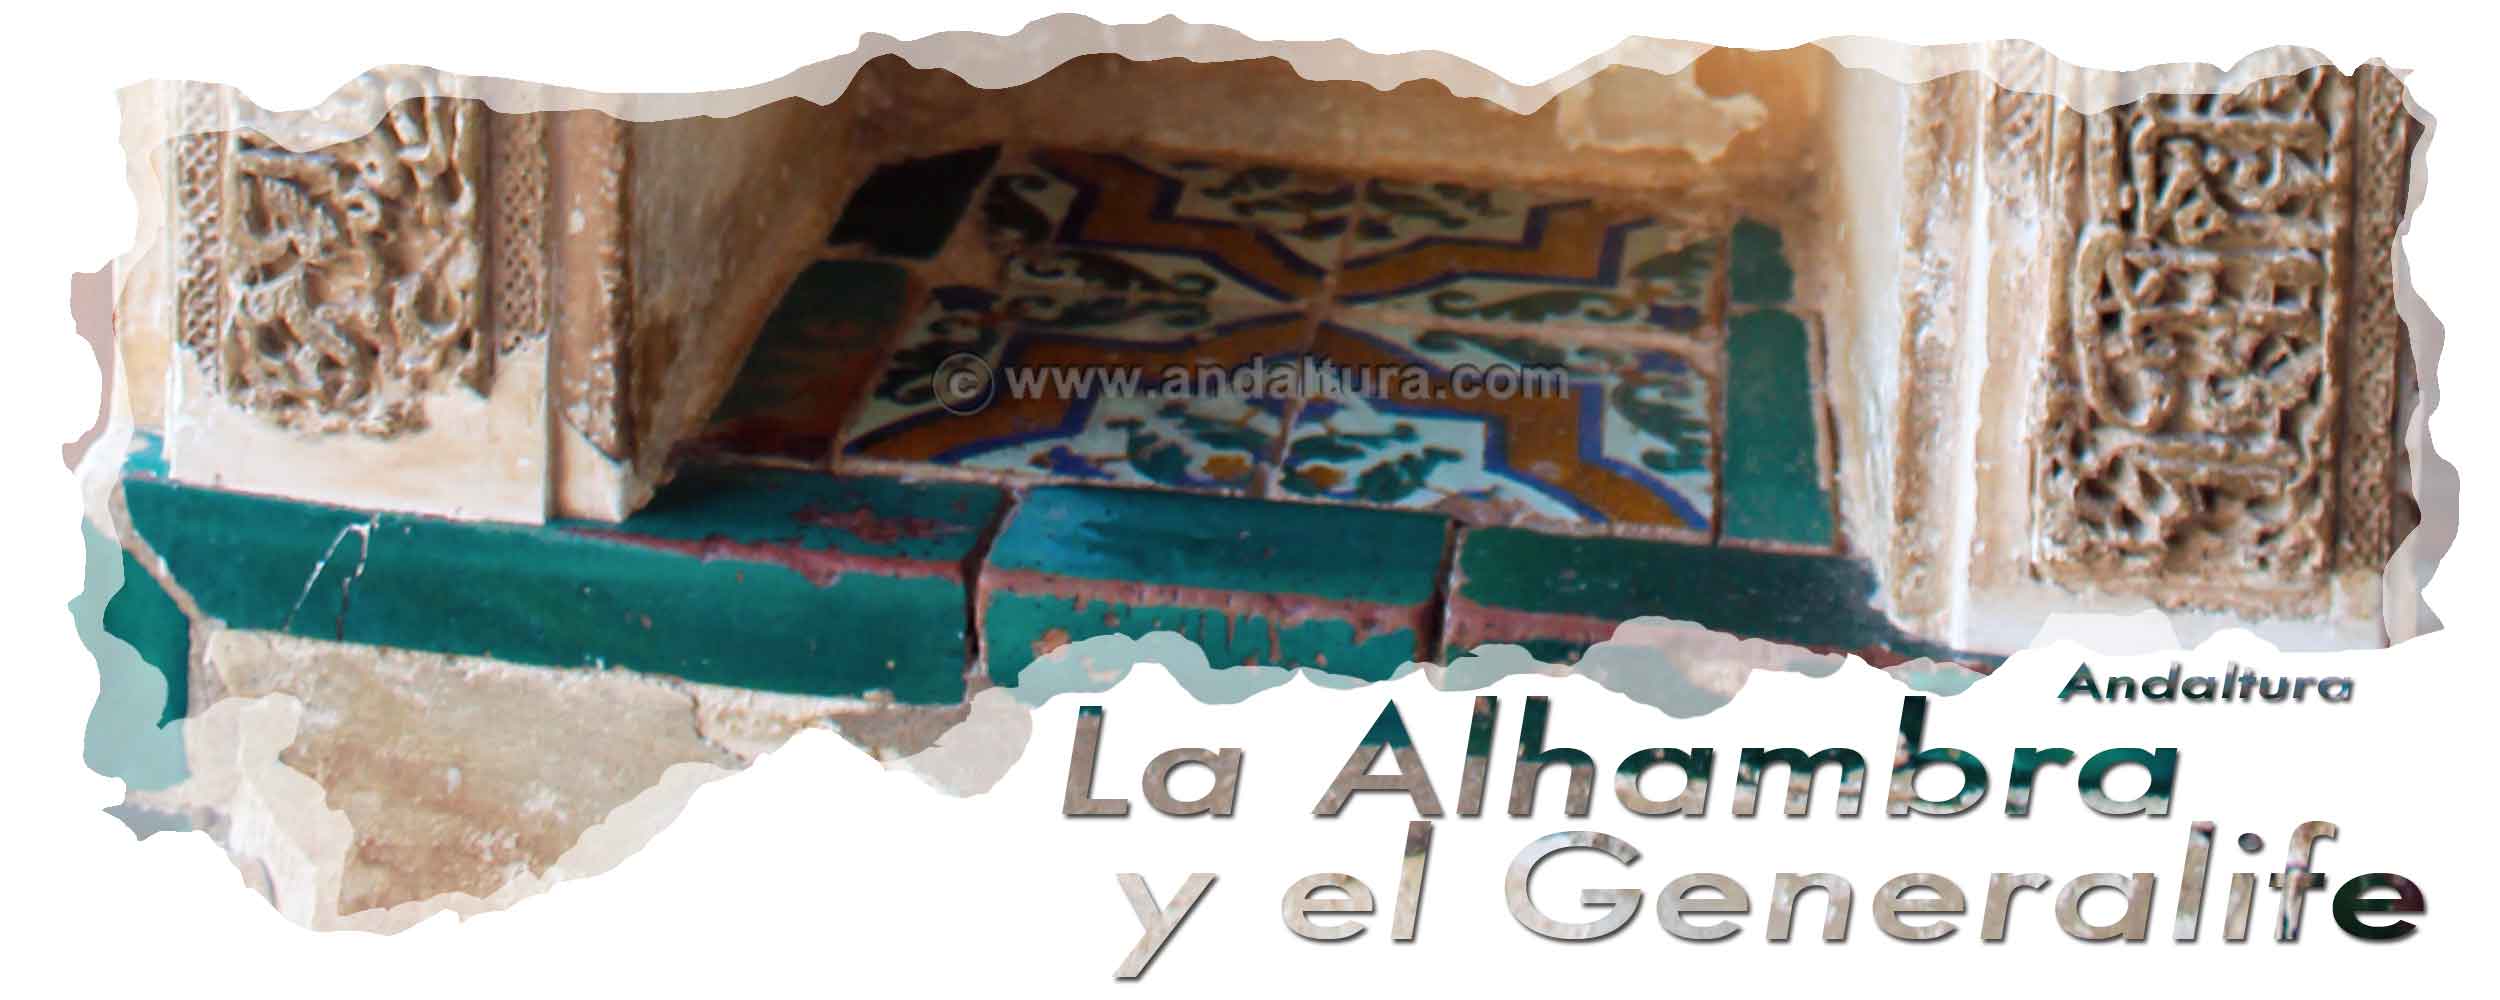 Azulejos en la base de las Tacas del Palacio del Generalife - Cabecera de los Turnos y Combinaciones durante los primeros turnos de la Alhambra